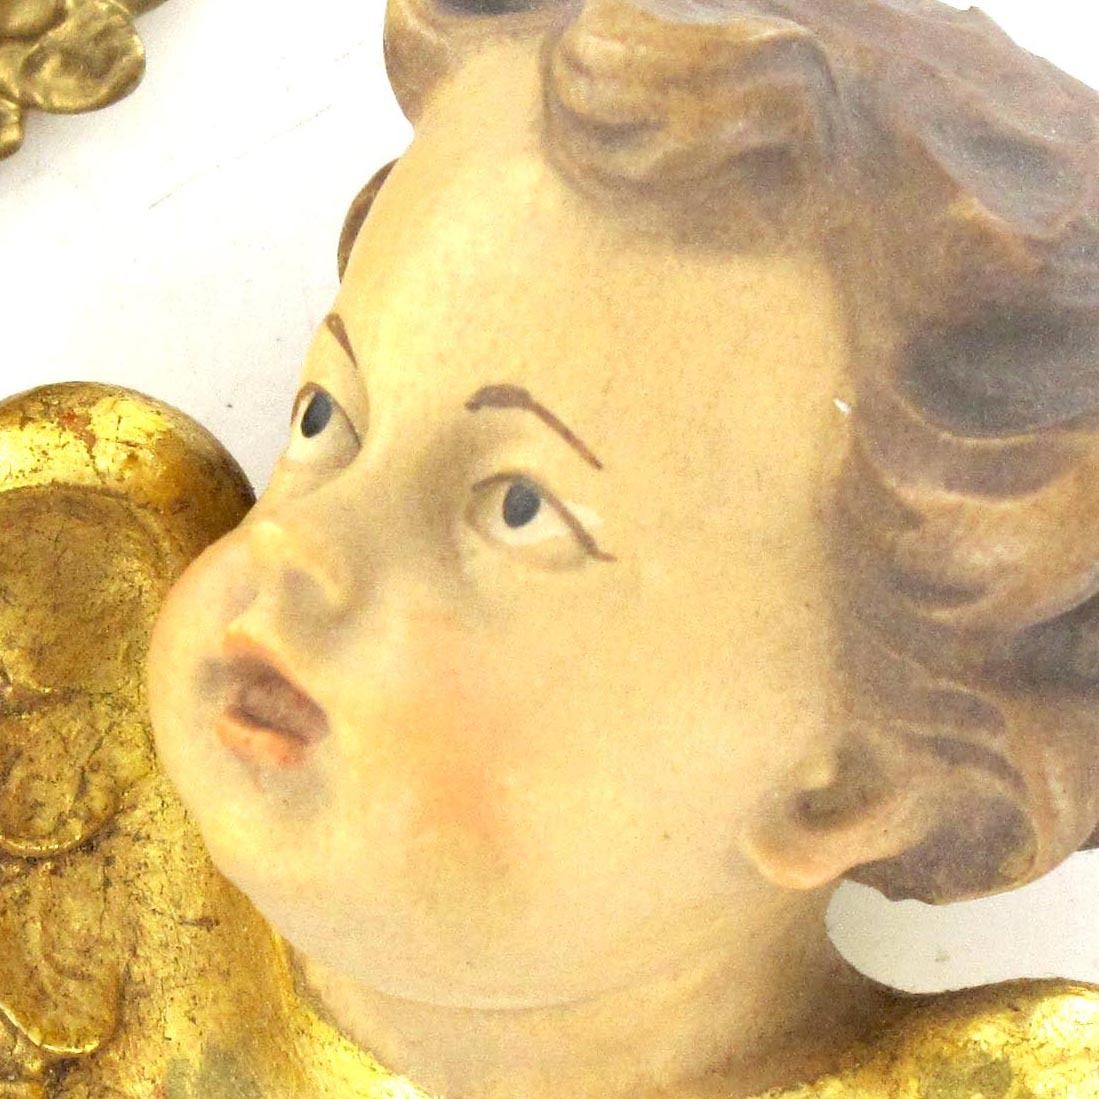 coppia testine angeli in legno di acero dipinto a mano con finiture in oro zecchino - 7 cm